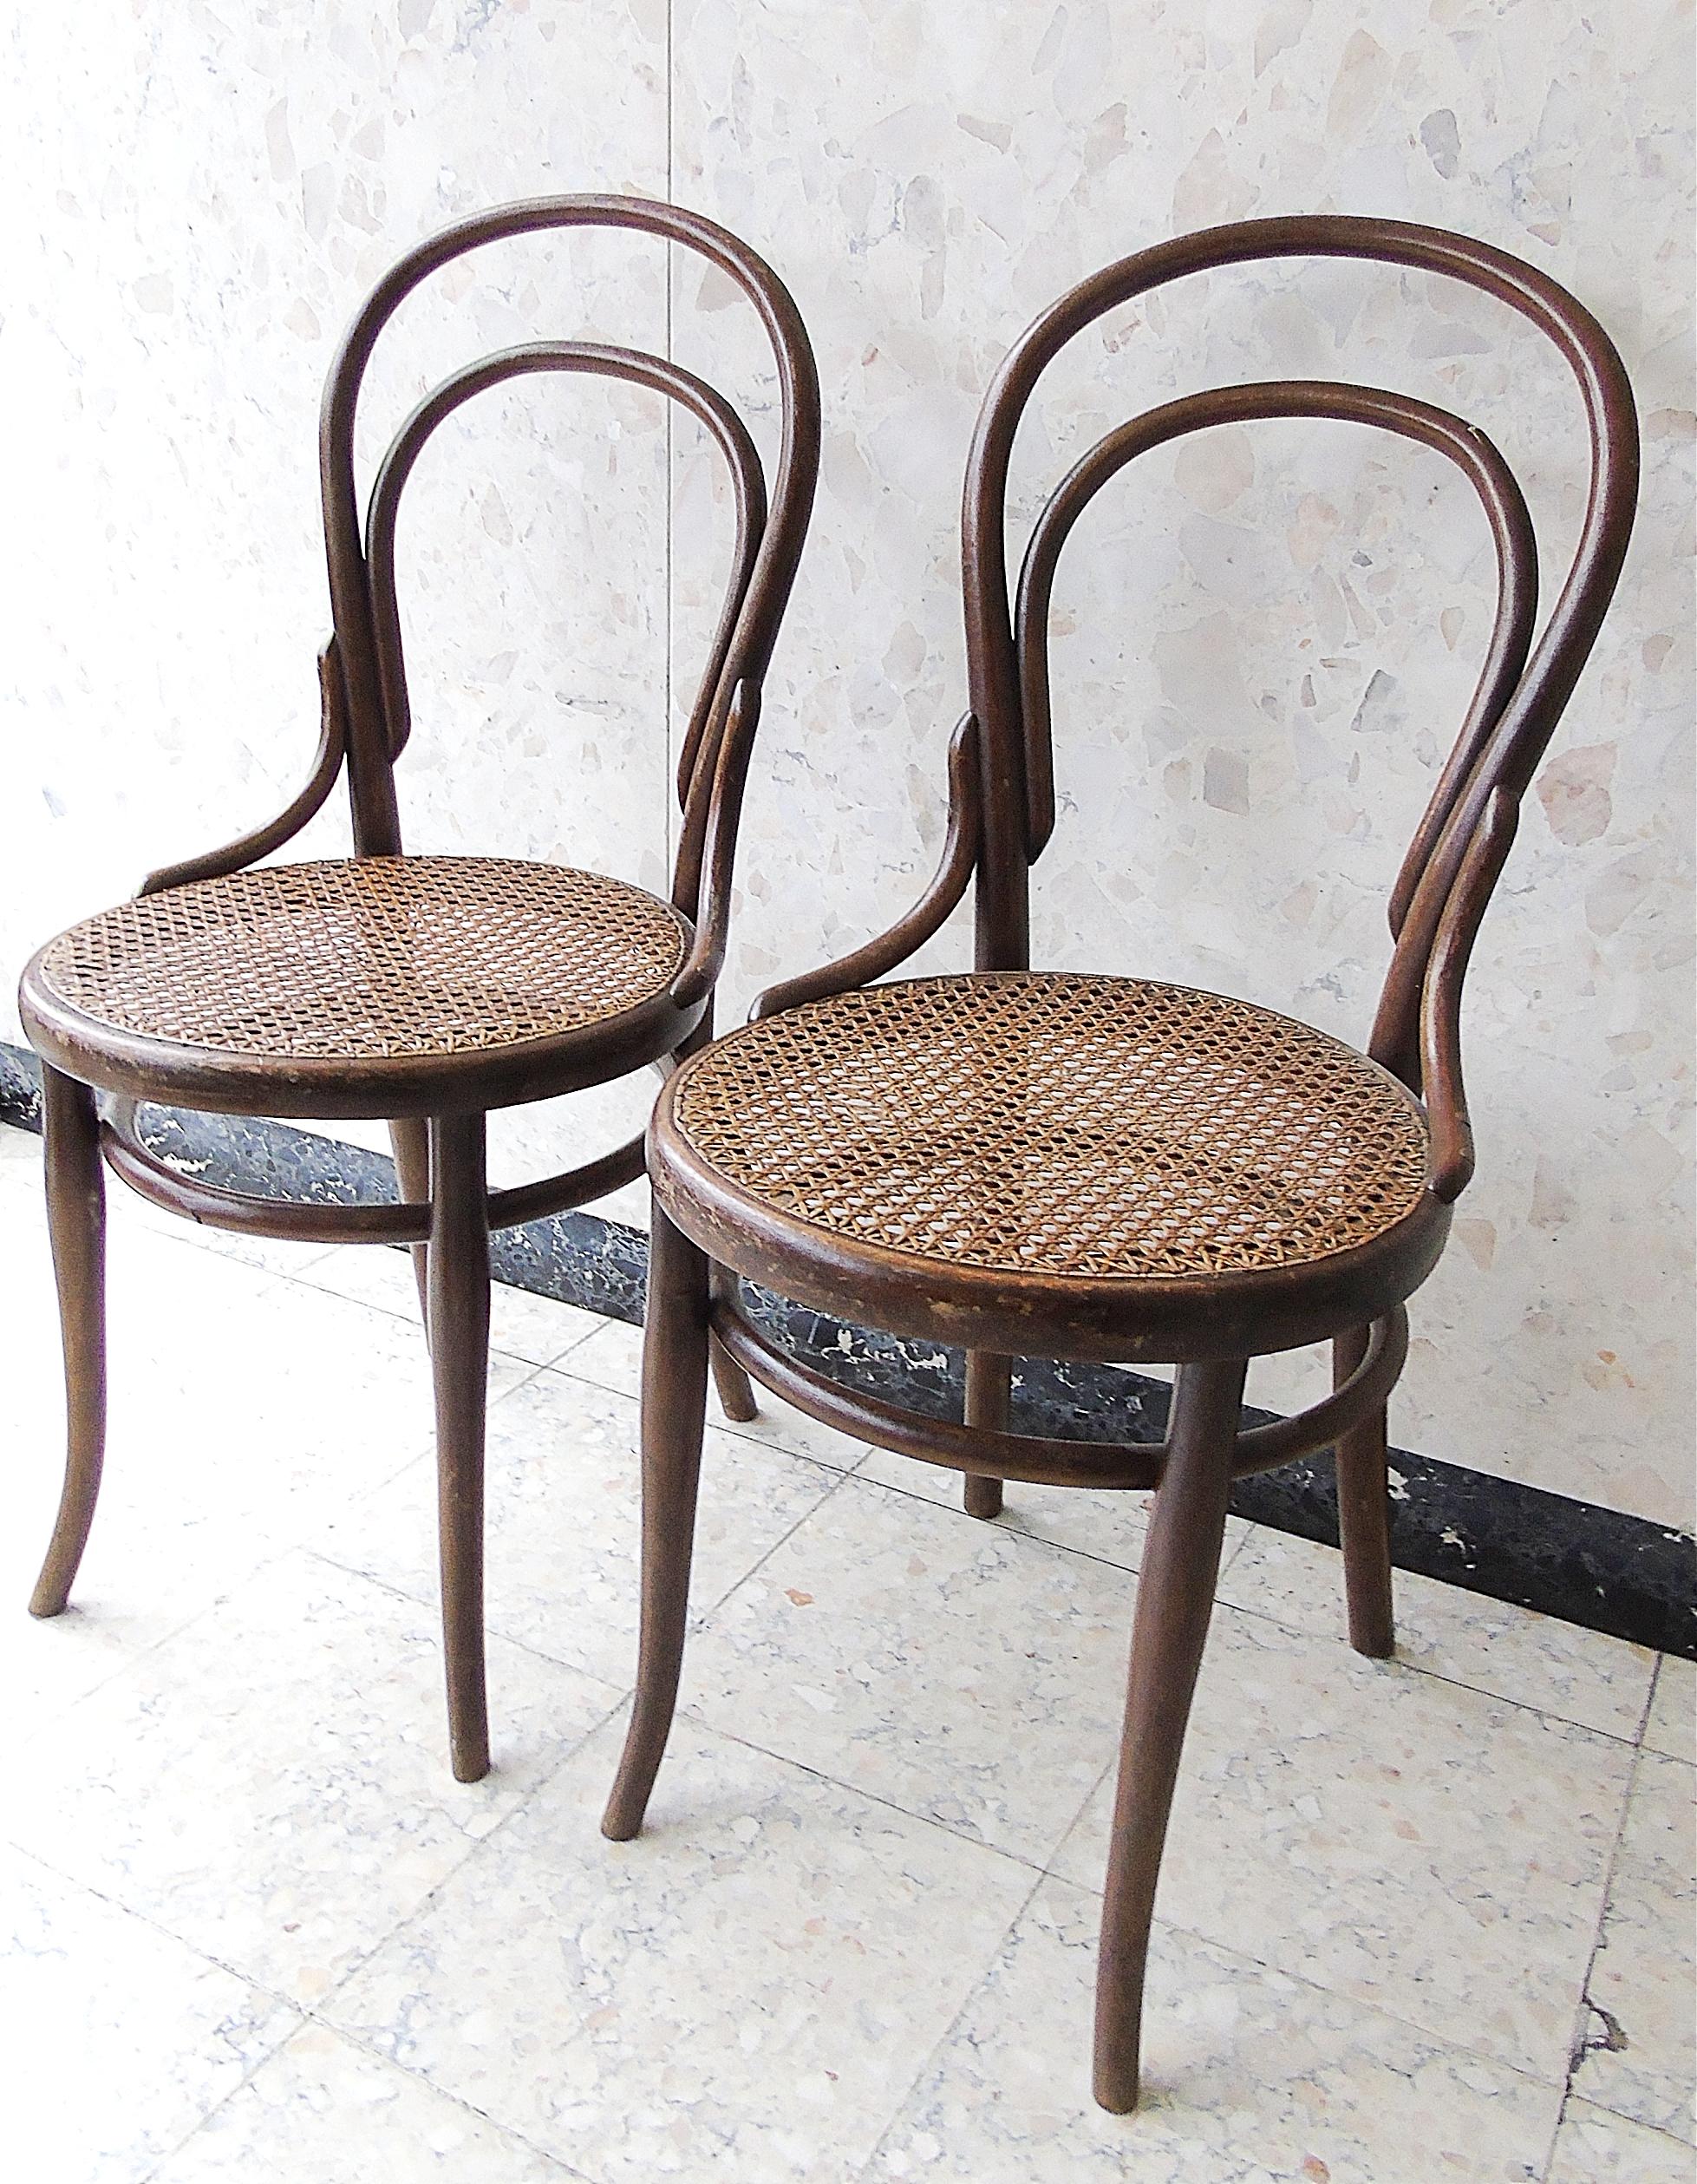 Zwei klassische antike Thonet Stühle.

Guter Gebrauchs- und Originalzustand.

1920er Jahre, Österreich

Abmessungen:
Höhe: 85cm
Tiefe und mit: 43cm

Wird als Paar verkauft.